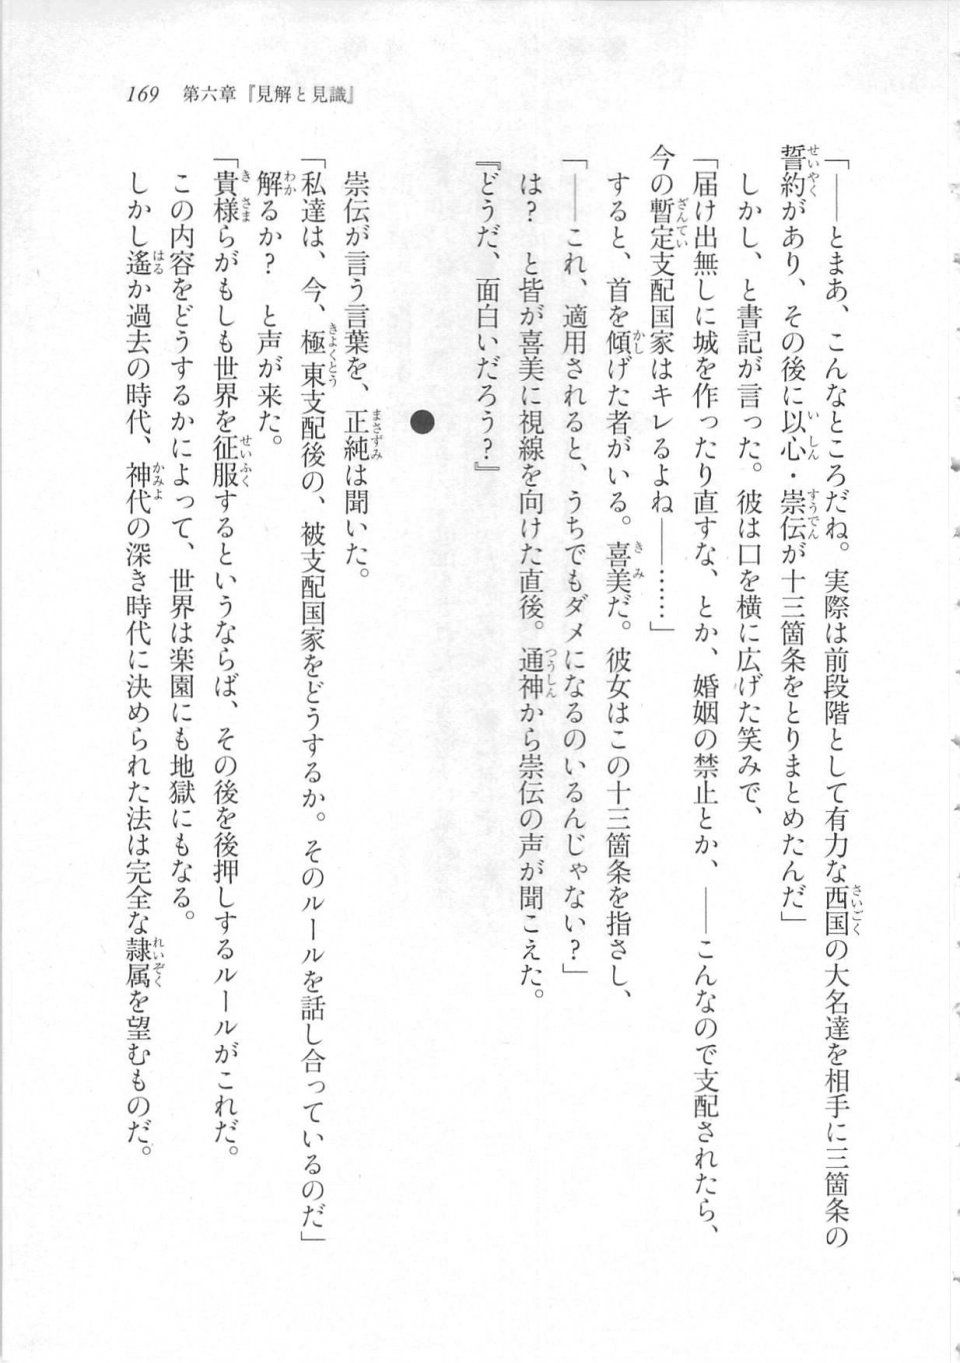 Kyoukai Senjou no Horizon LN Sidestory Vol 3 - Photo #173